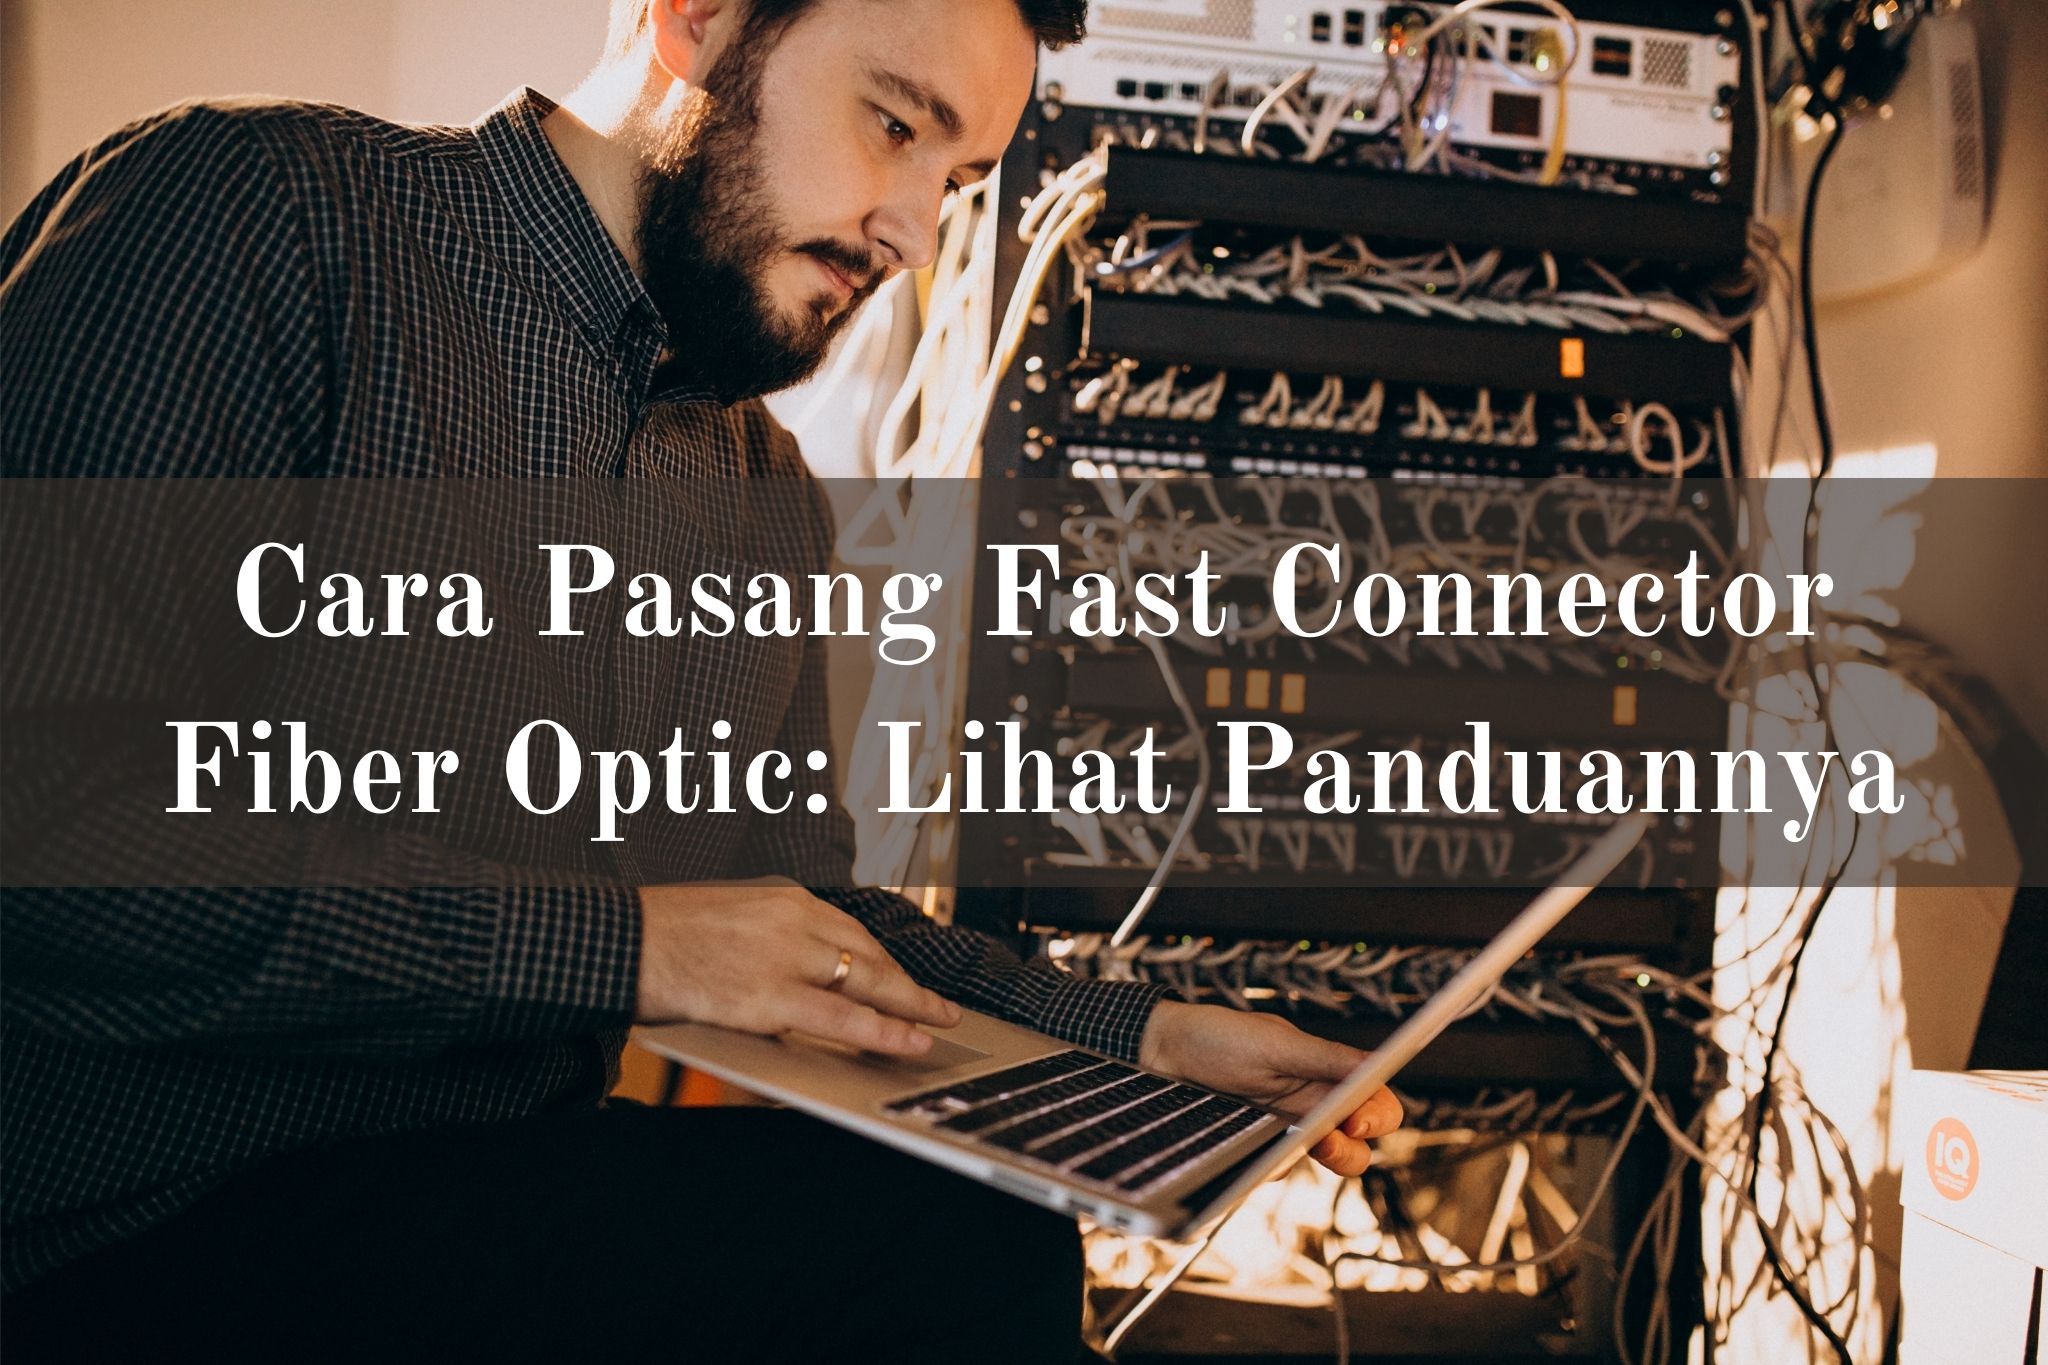 Cara pasang fast connector fiber optic